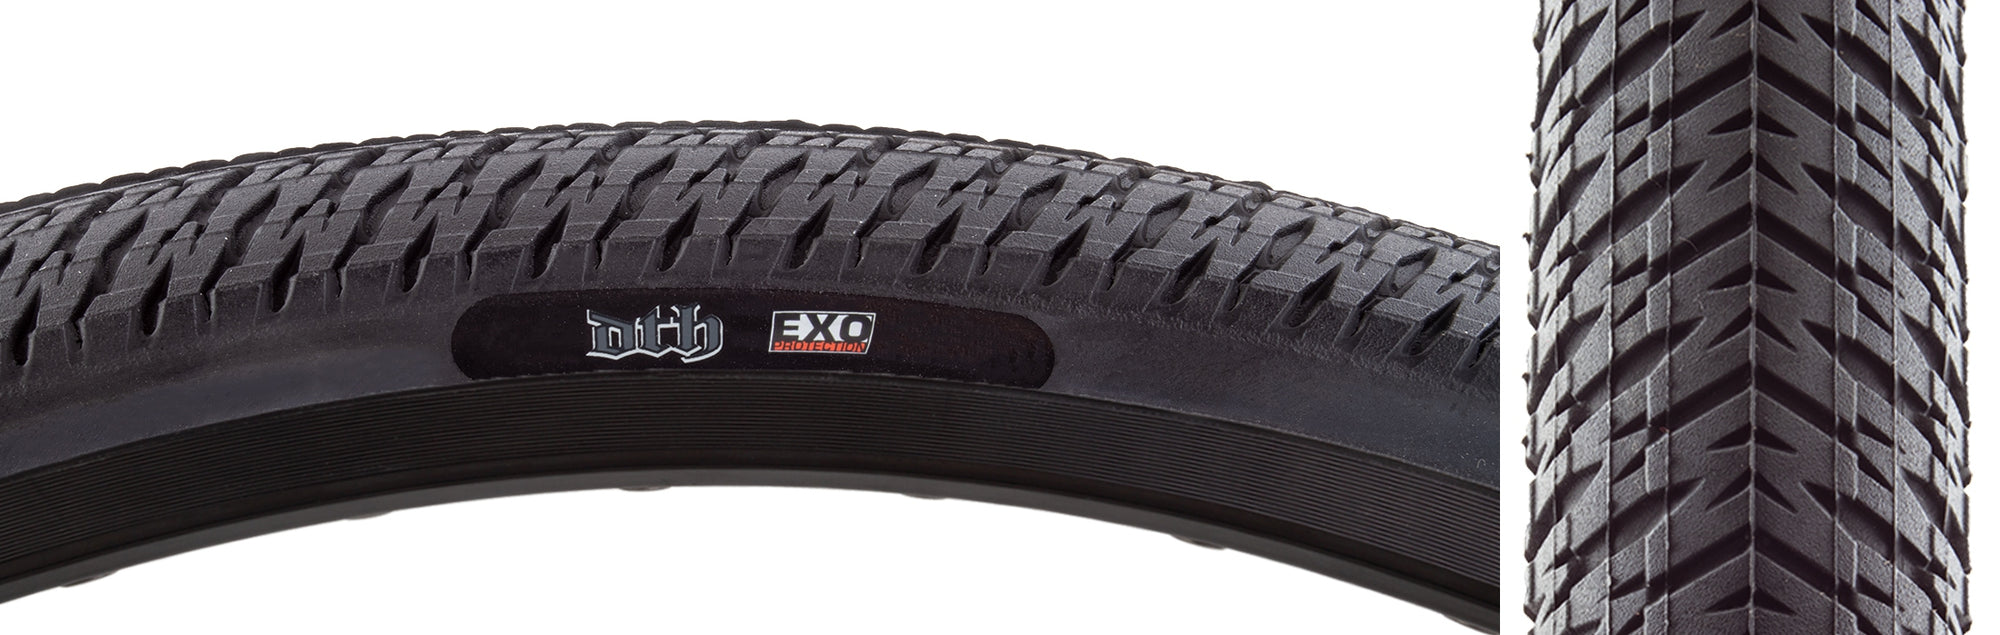 20x1.95 Maxxis DTH Folding Tire - All Black